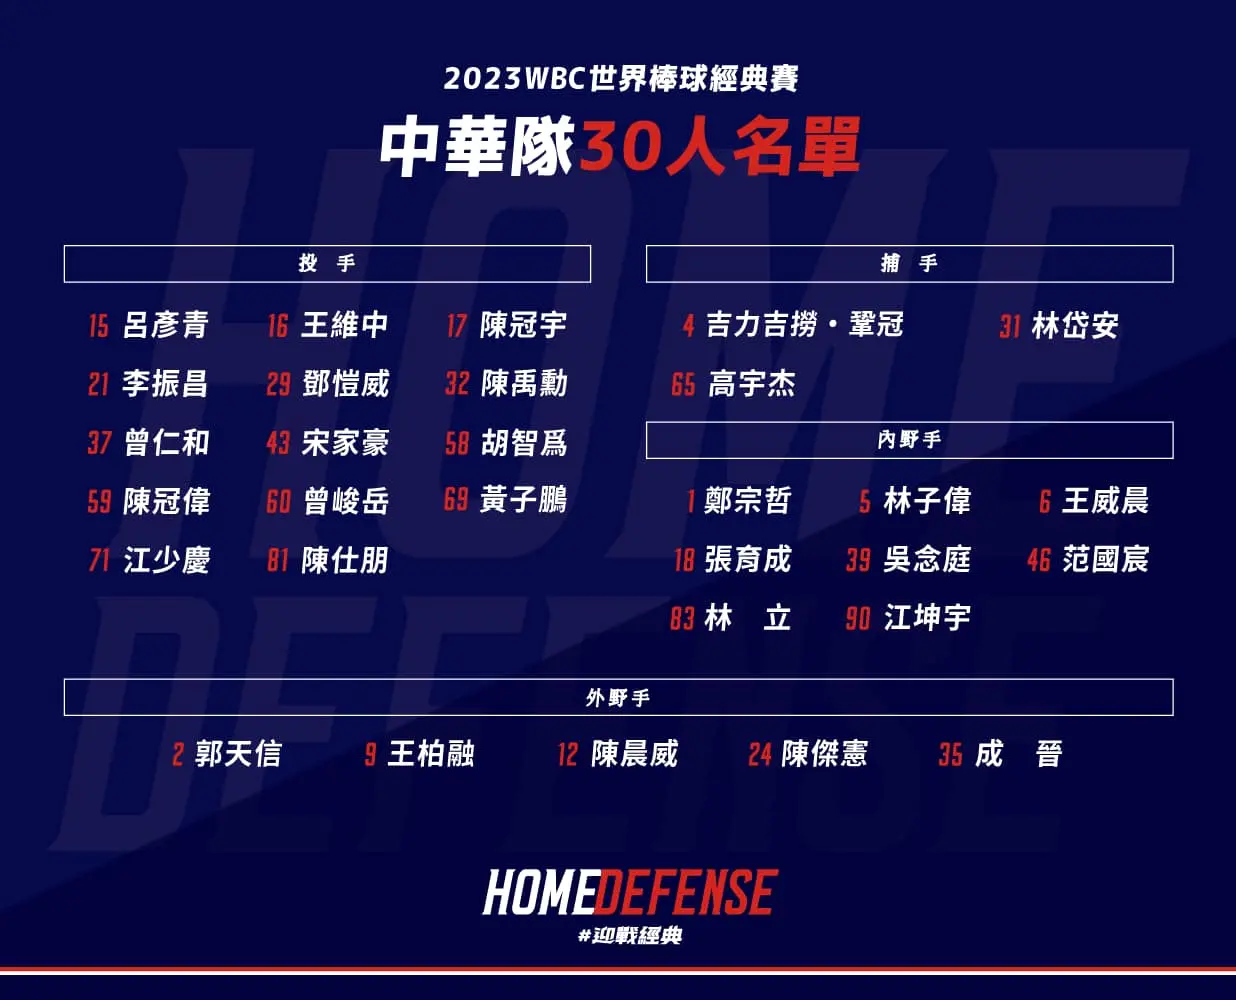 2023 世界棒球經典賽中華隊陣容名單